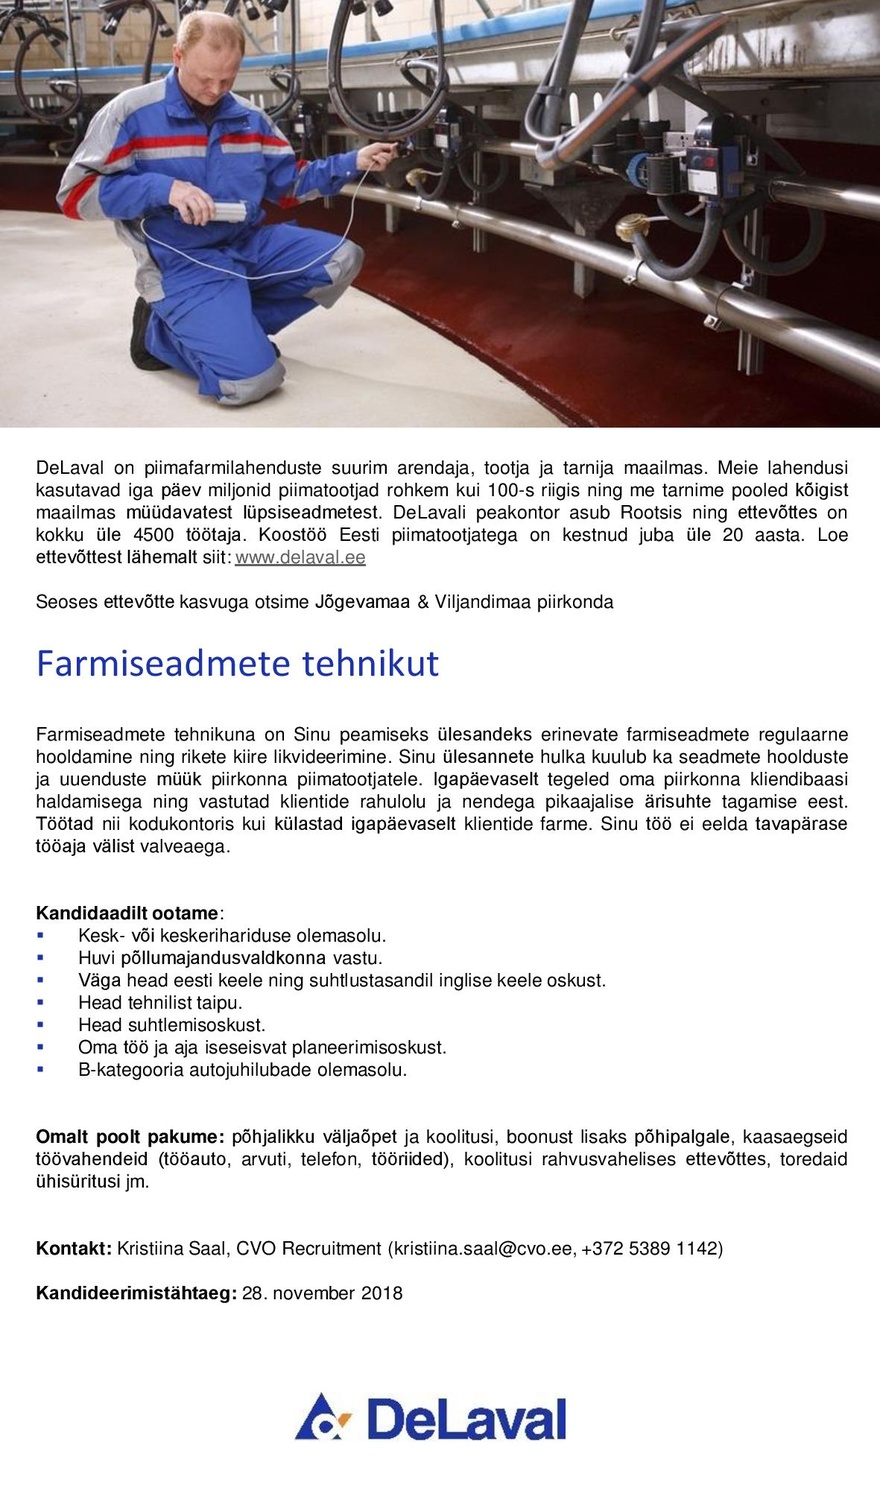 DeLaval OÜ Farmiseadmete tehnik (Jõgevamaa & Viljandimaa)